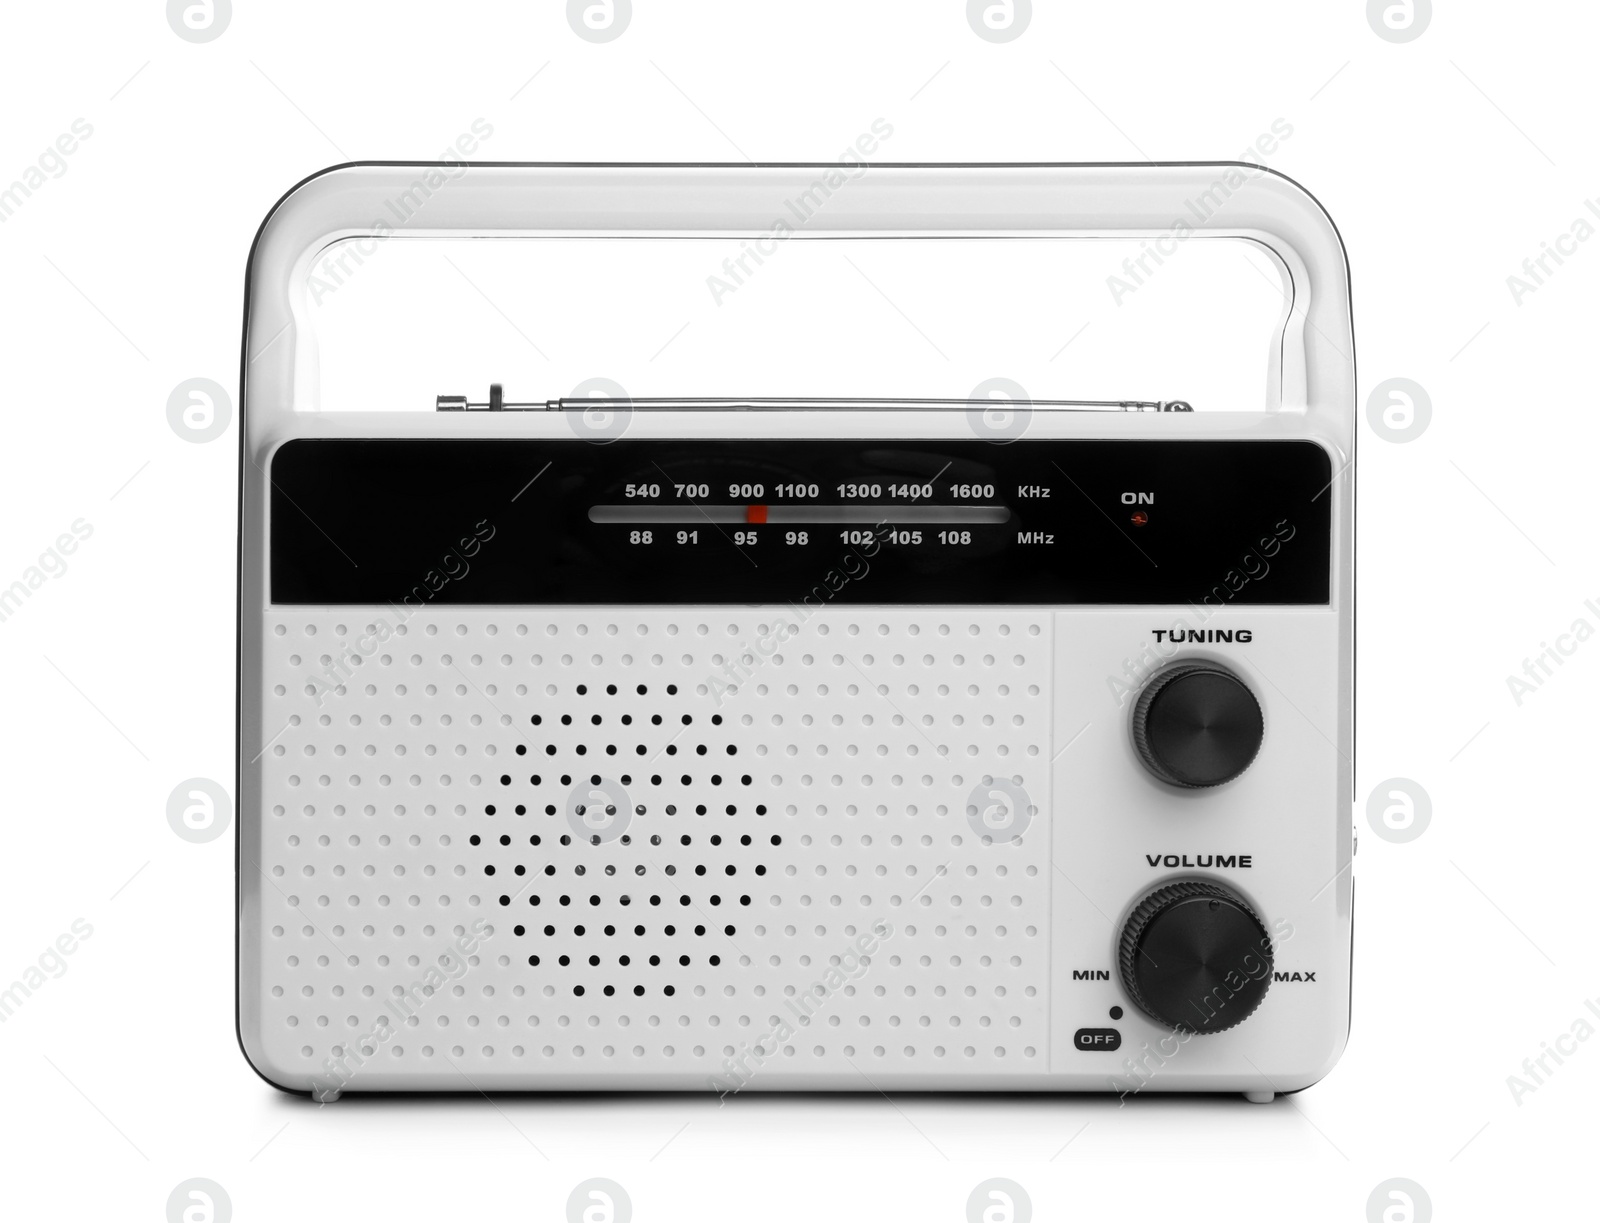 Photo of Portable retro radio receiver isolated on white